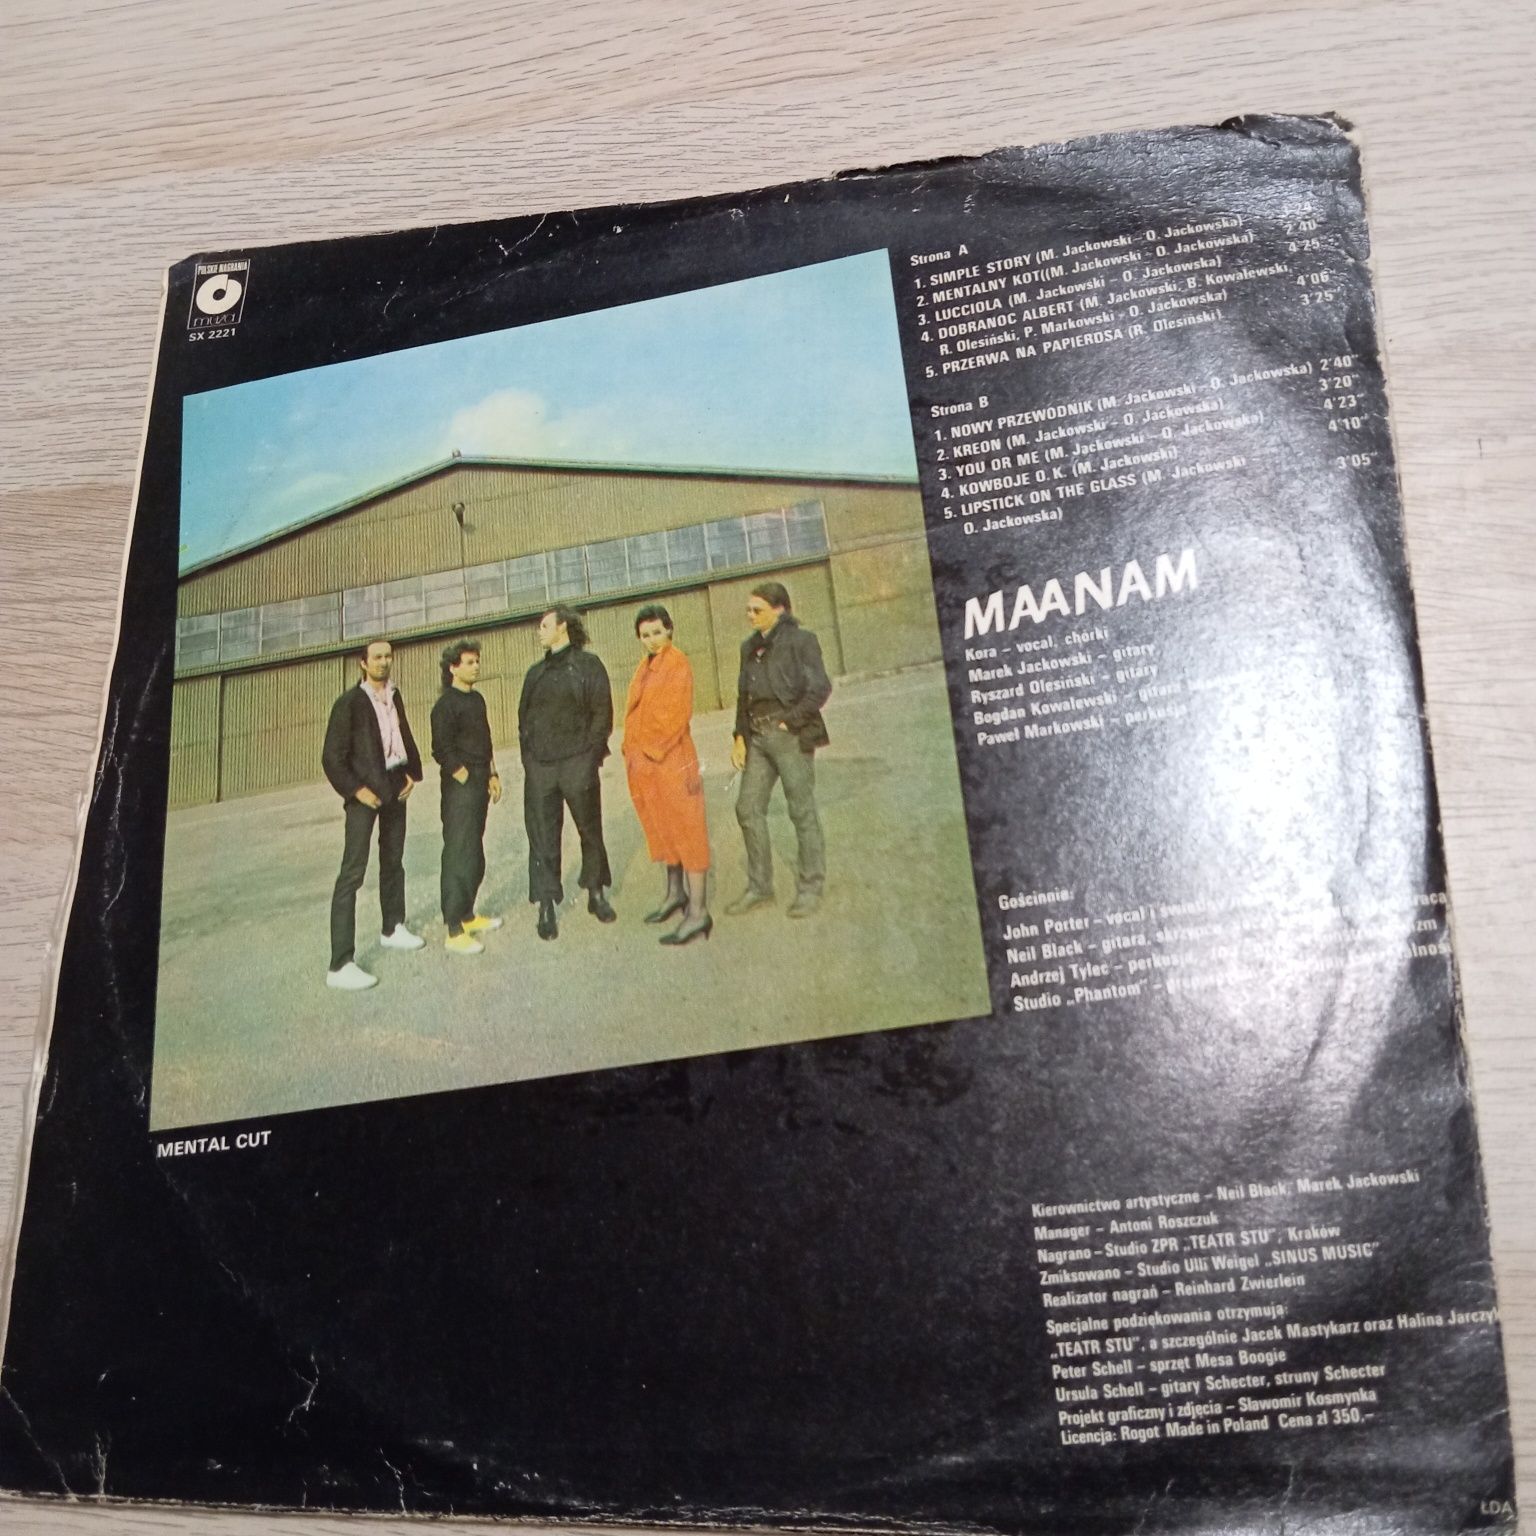 Maanam, Mental Cut, płyta winylowa w dobrym stanie